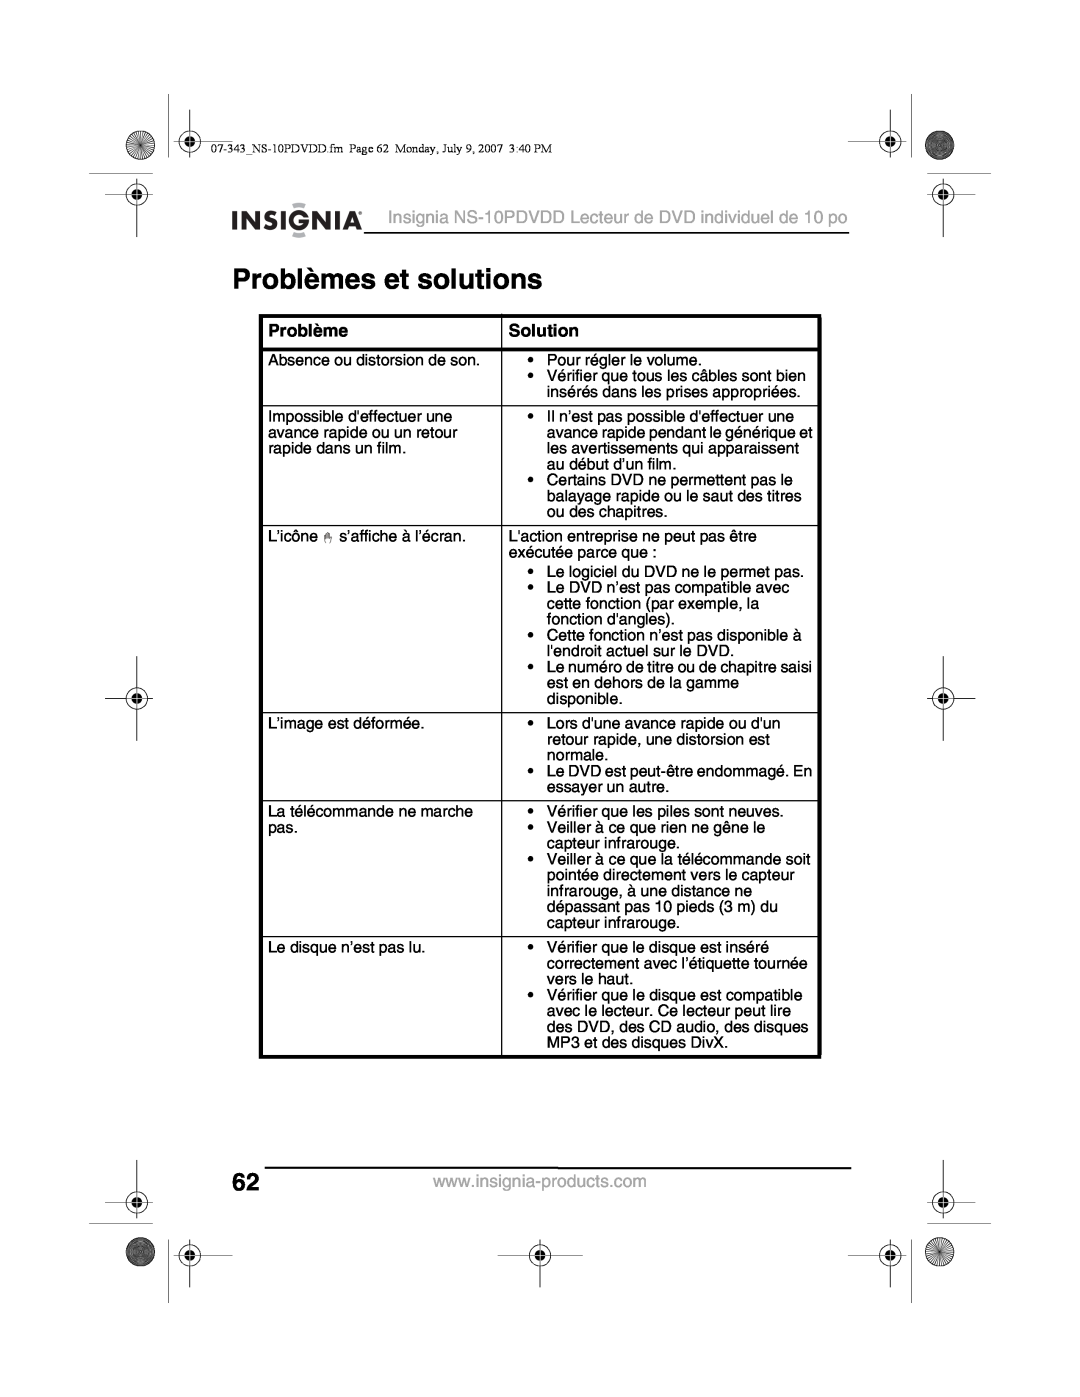 Insignia manual Problèmes et solutions, Insignia NS-10PDVDD Lecteur de DVD individuel de 10 po, Solution 